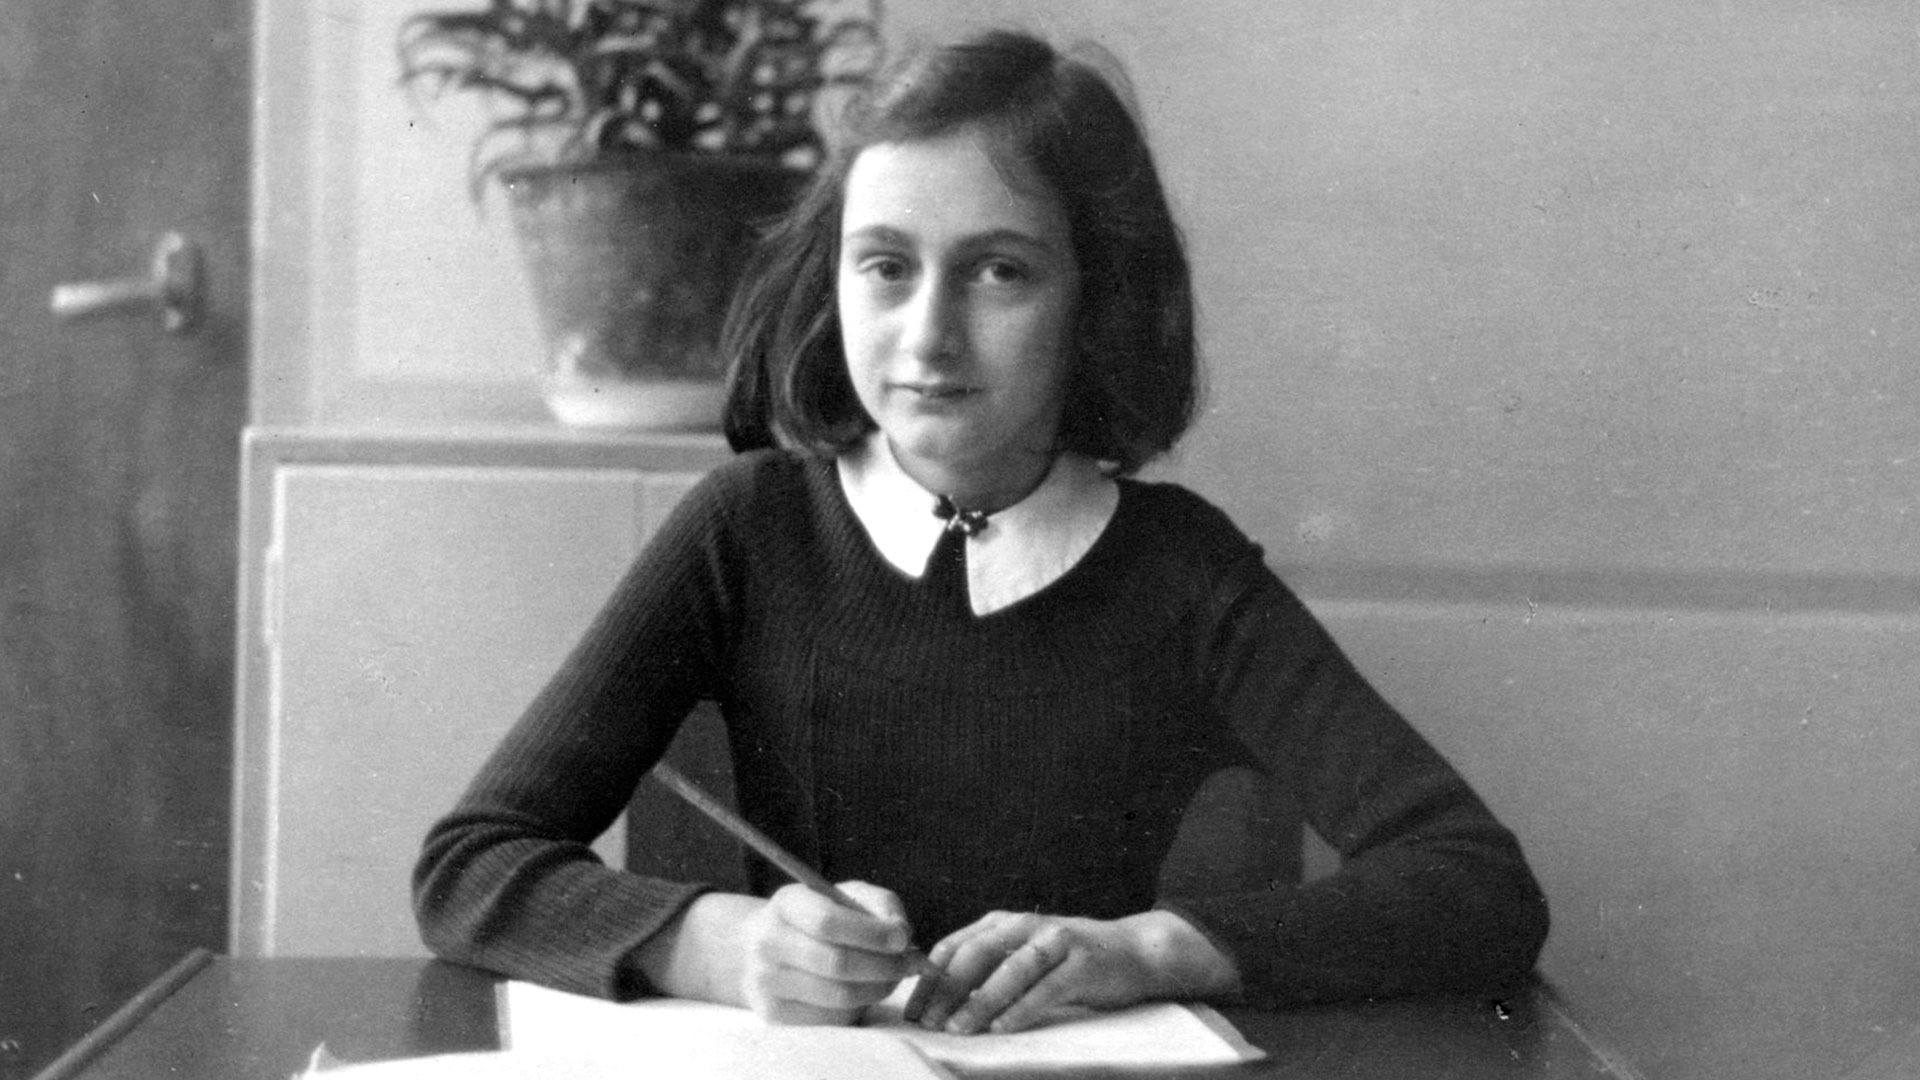 "Sólo cuando ya estuvimos en la calle, papá y mamá empezaron a contarme poquito a poco el plan del escondite. Llevaban meses sacando de la casa la mayor cantidad posible de muebles y enseres, y habían decidido que entraríamos en la clandestinidad voluntariamente el 16 de julio", escribió Anna en su diario (Anne Frank House)